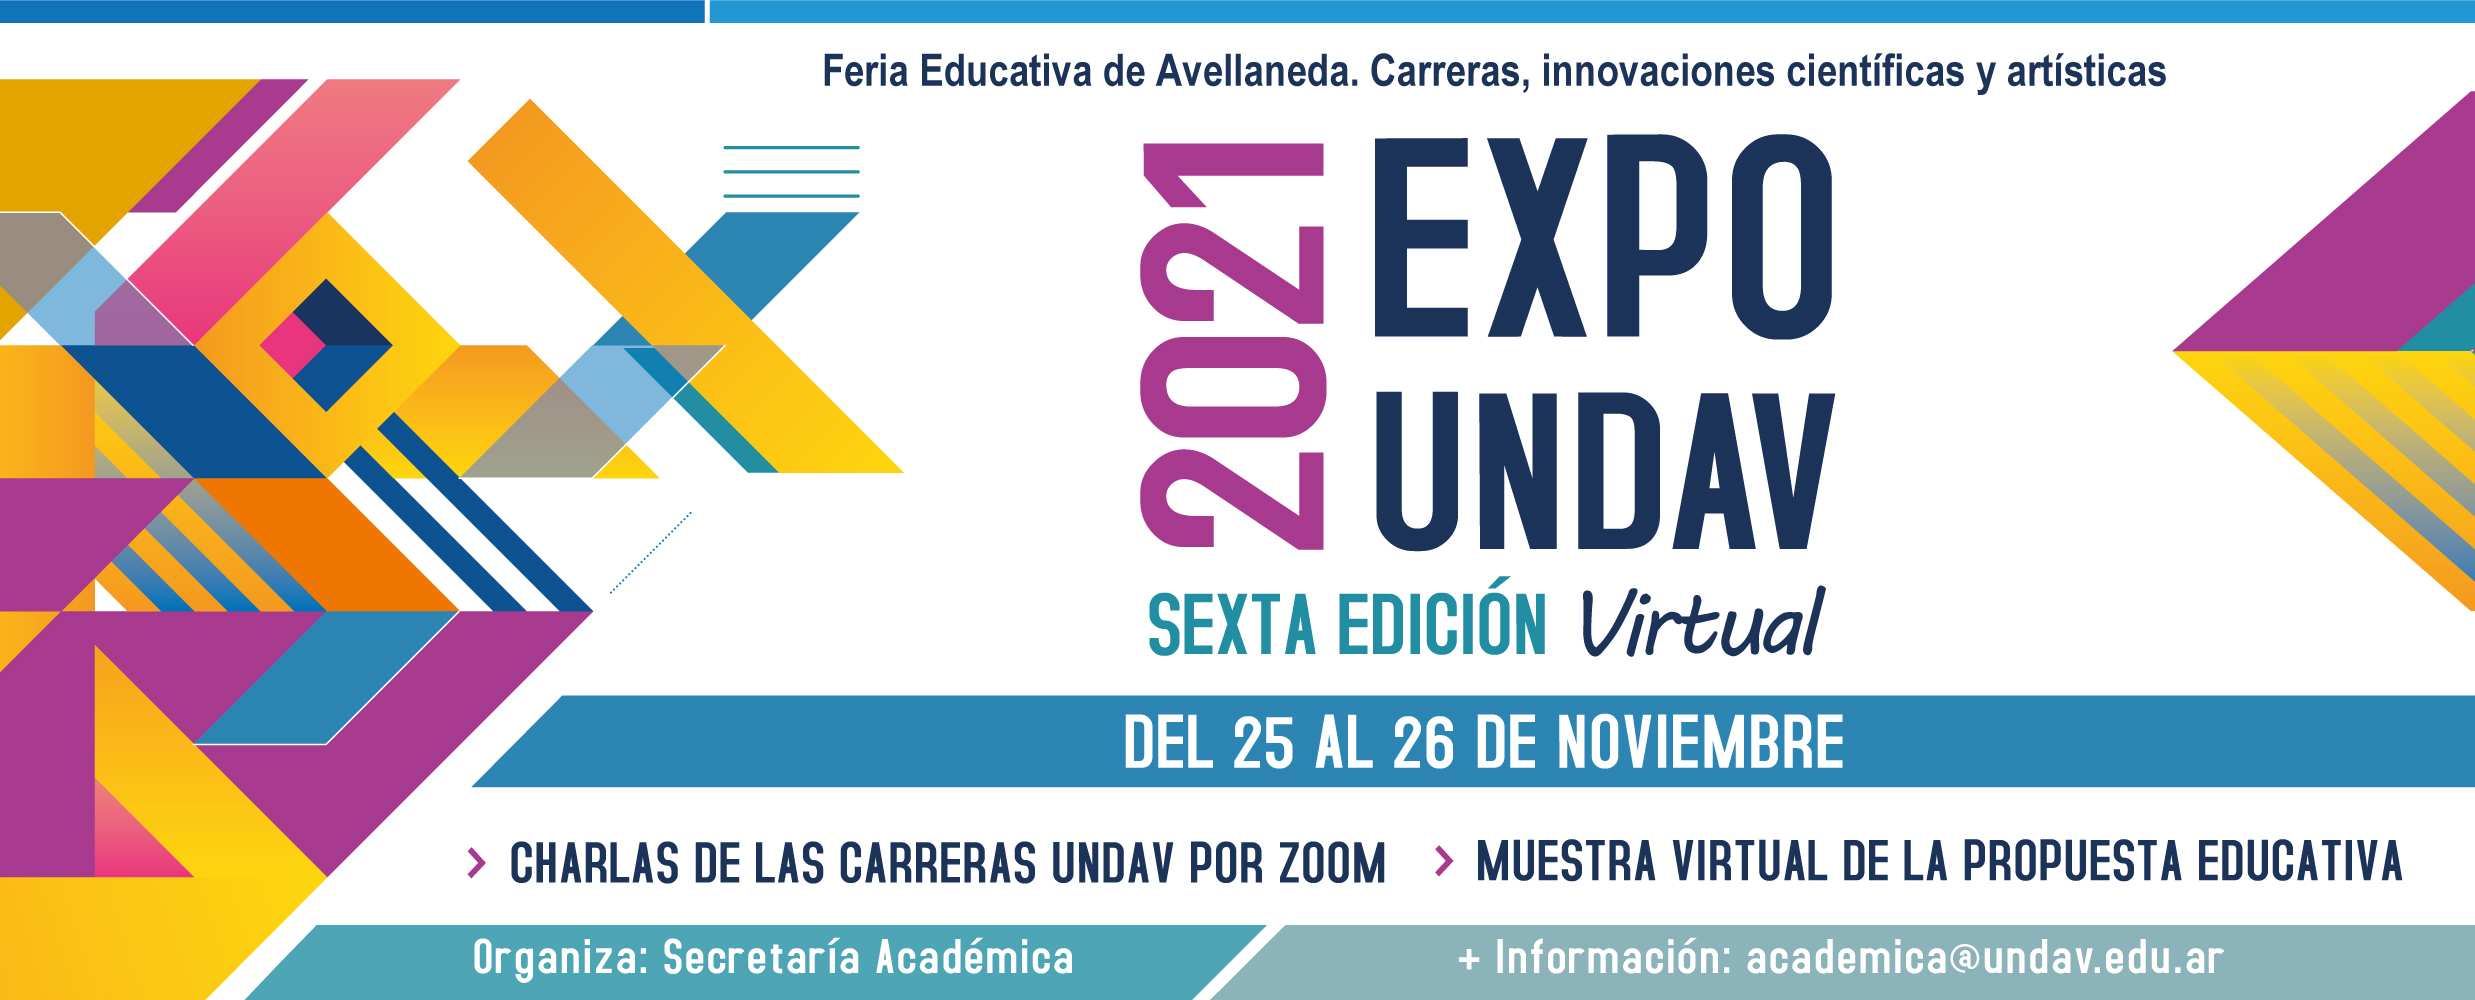 Imagen de Feria Educativa de Avellaneda. 25 y 26 de noviembre 2021